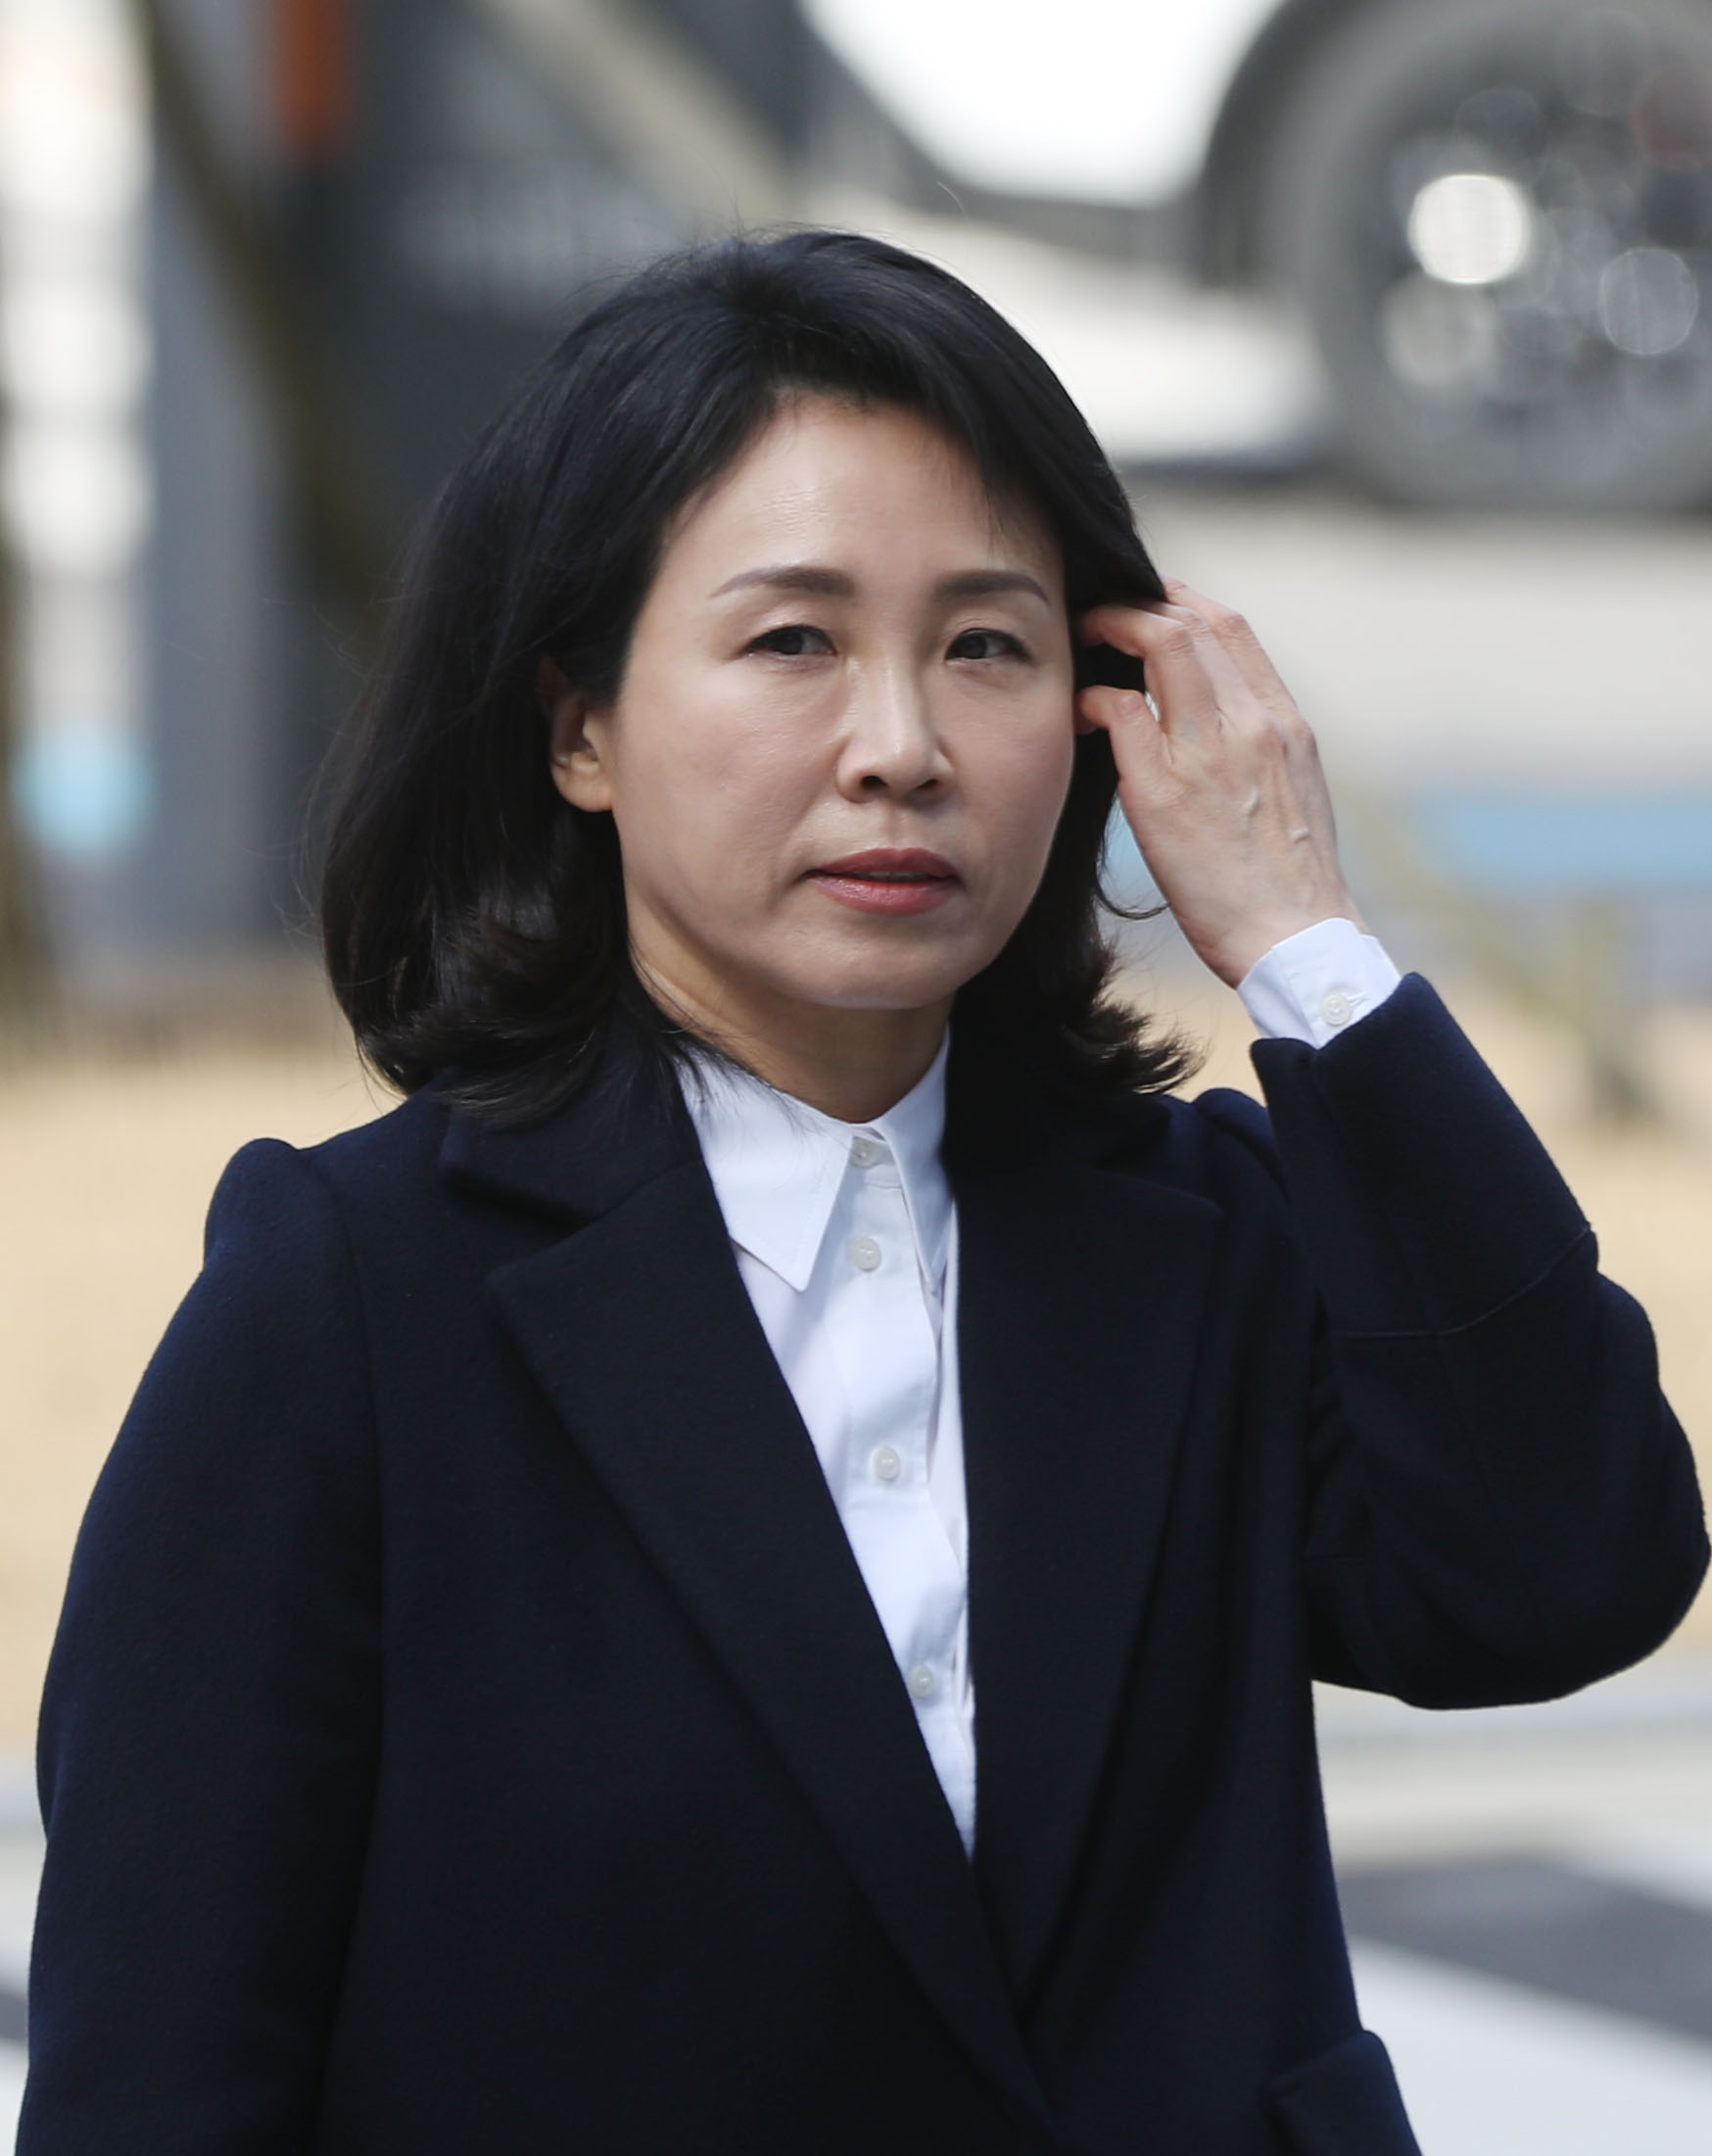 ‘공직선거법 위반’ 혐의 재판 출석하는 김혜경